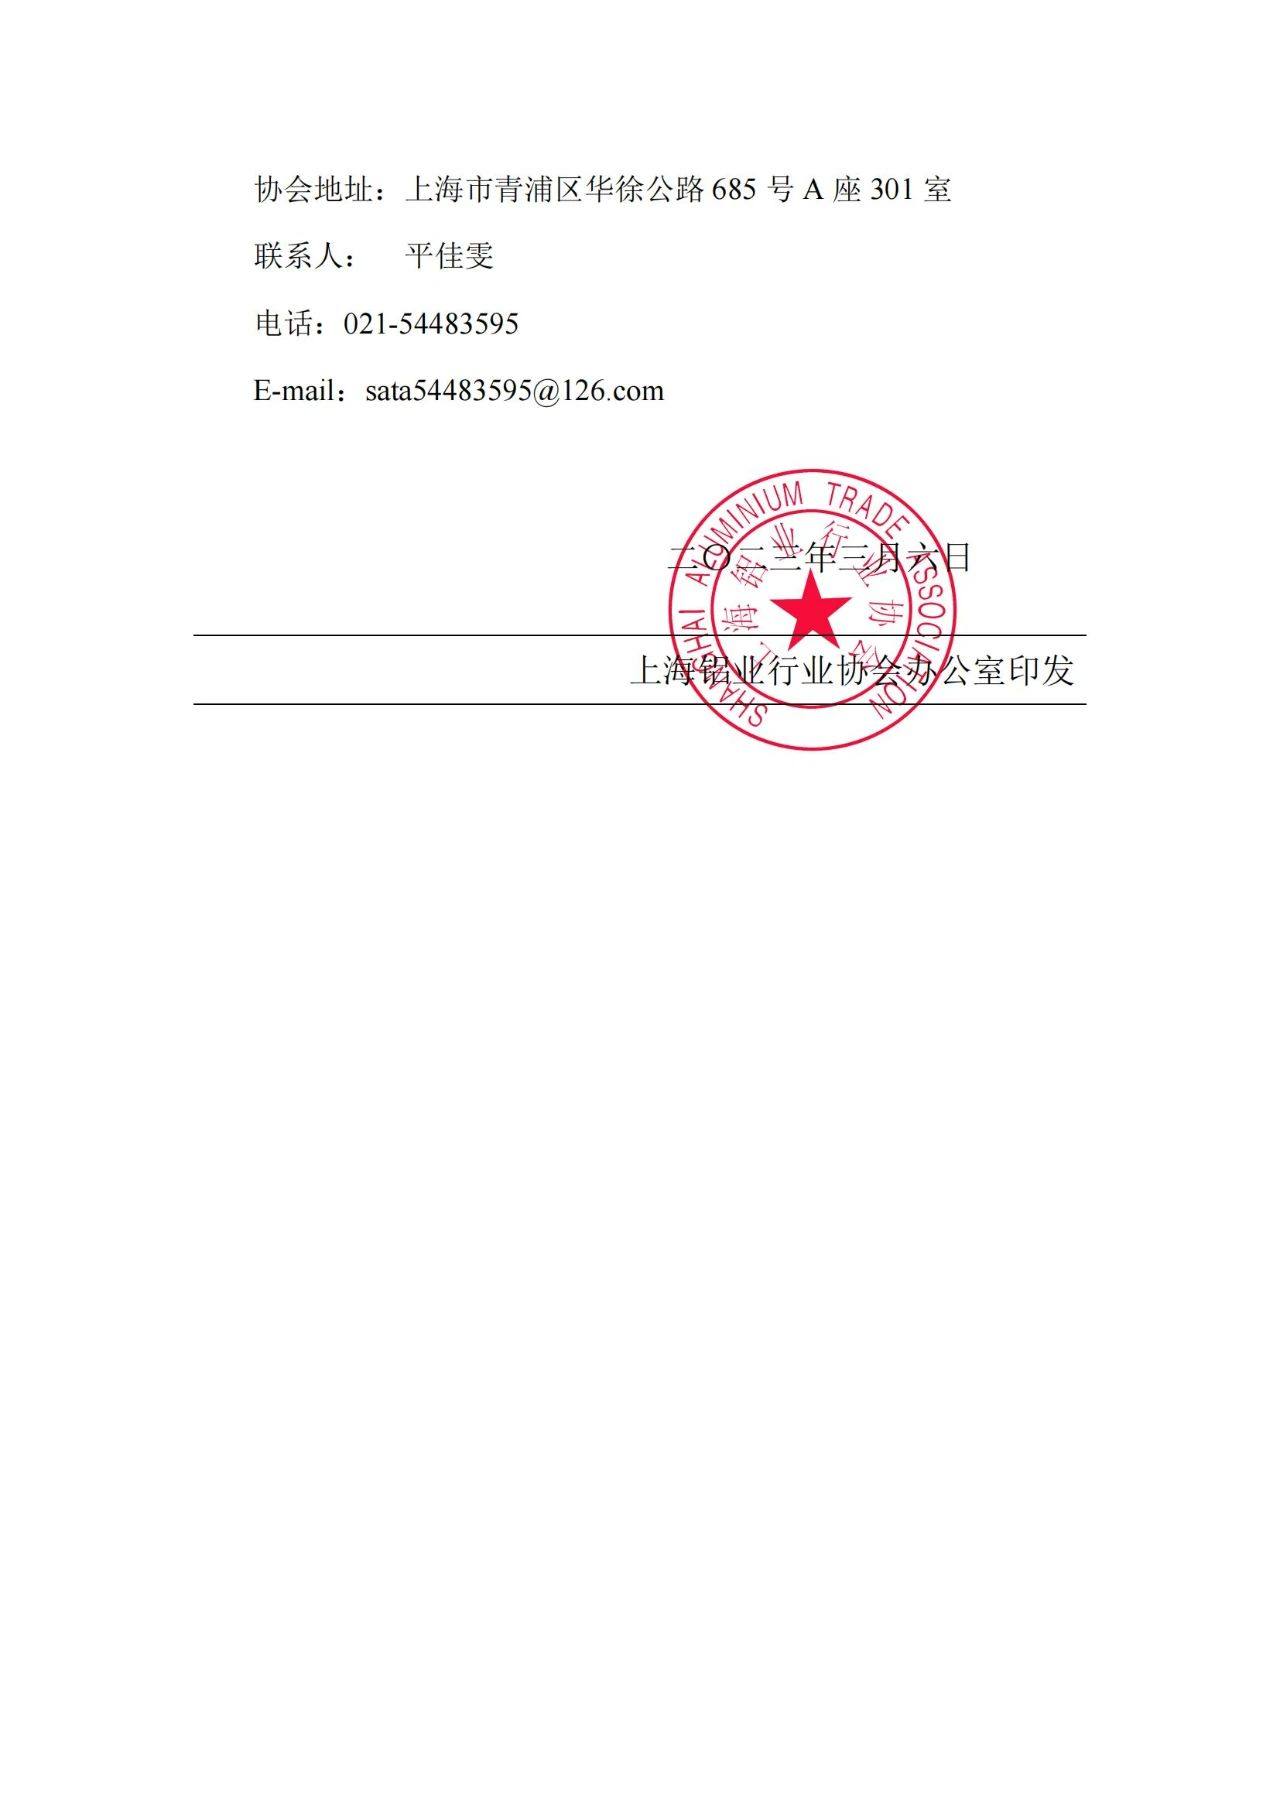 上海铝协关于《车用宽幅薄壁铝型材》、《高轻度铝合金挤压模具》2项团体标准立项的公告